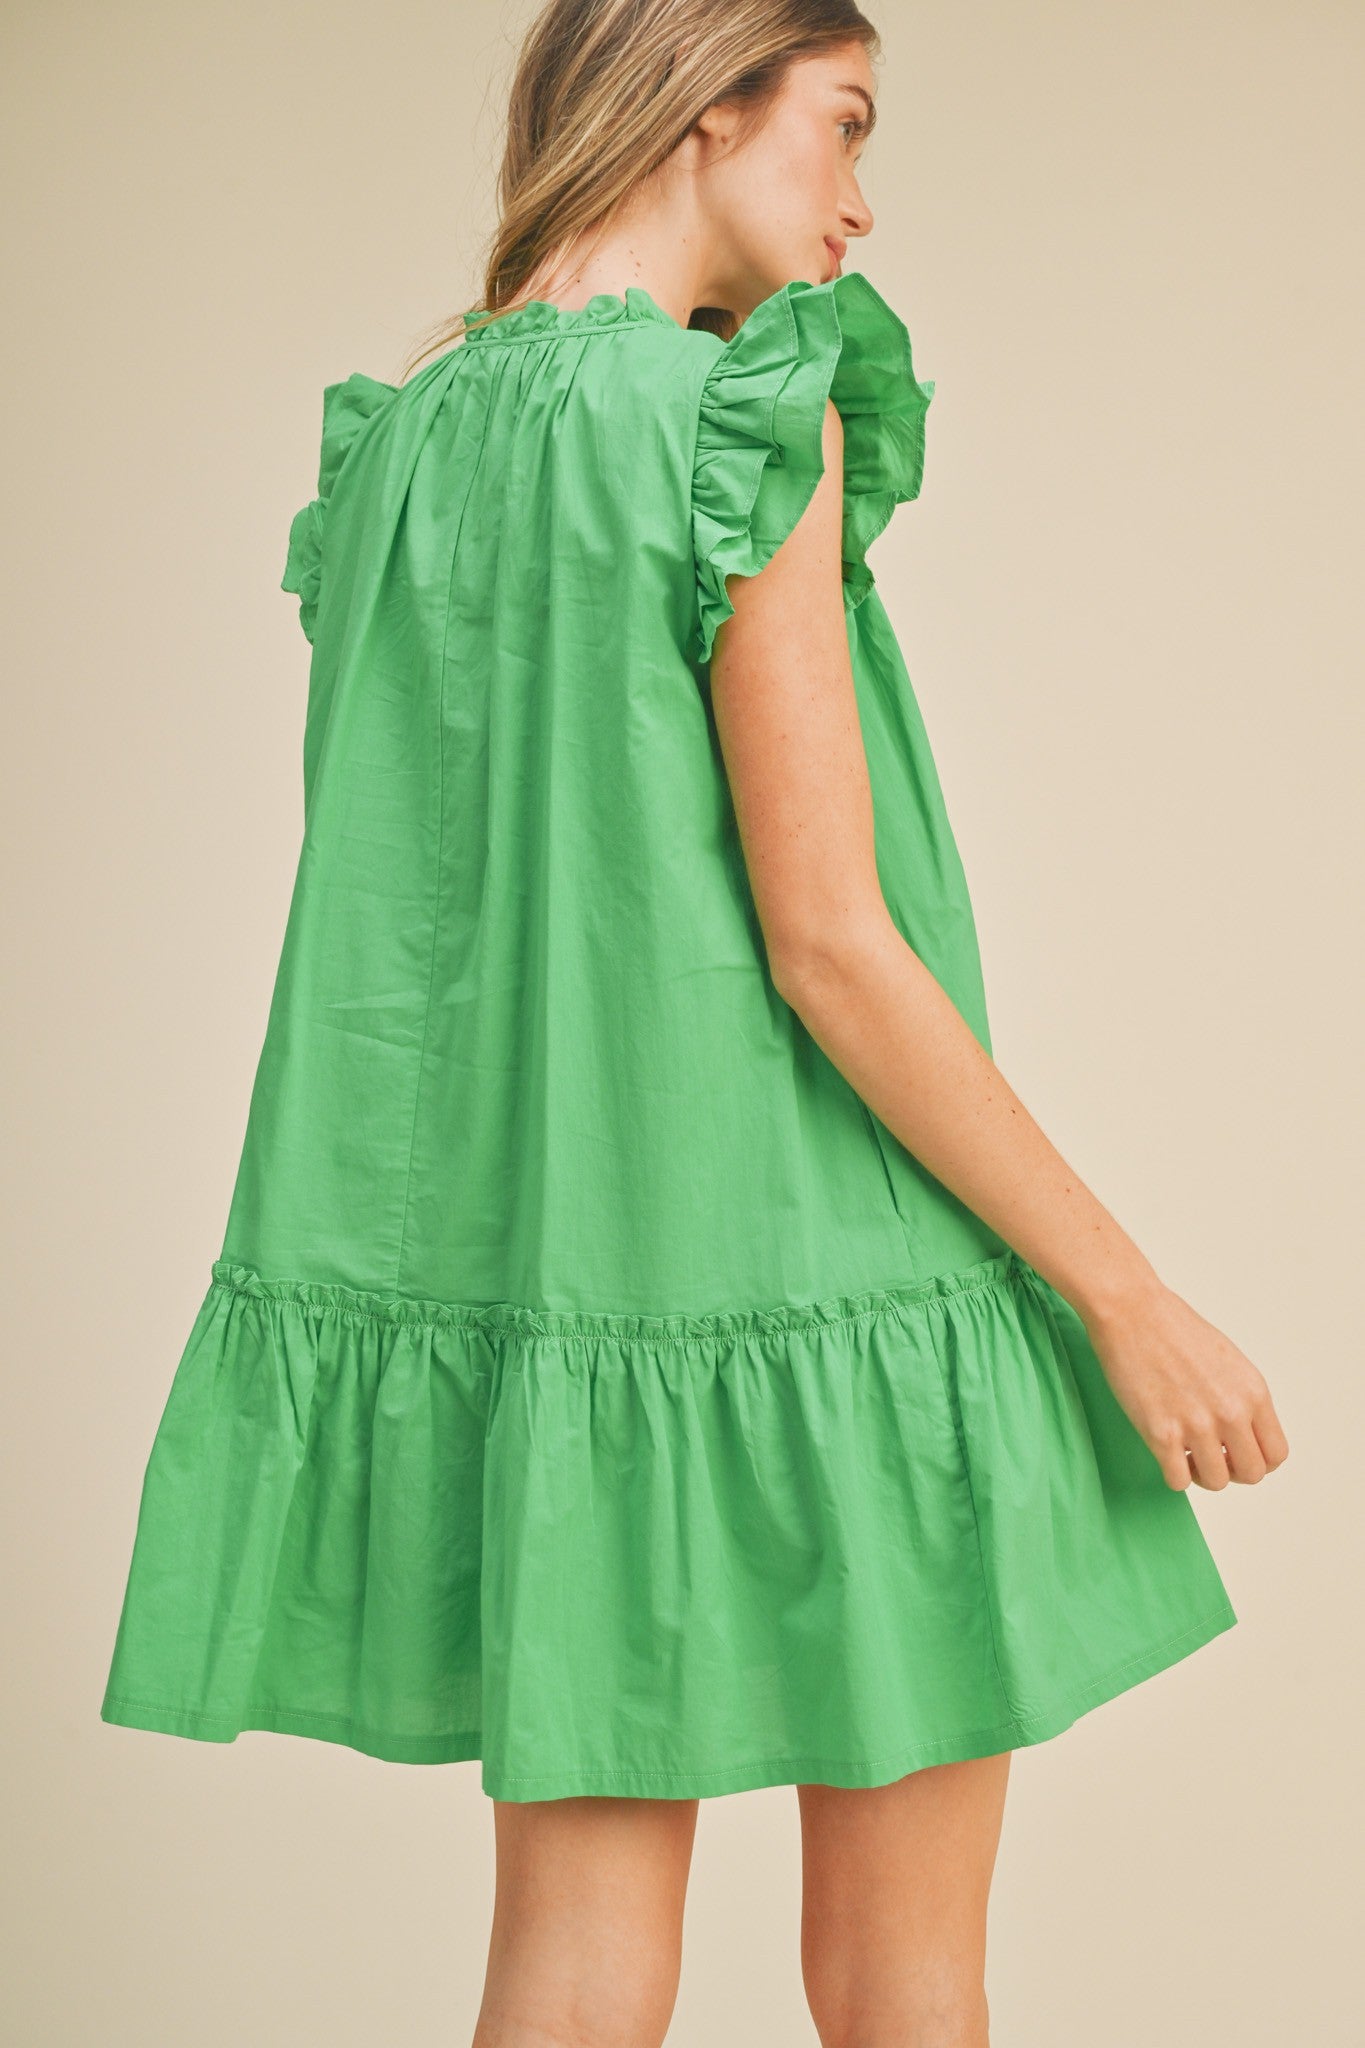 Ruffled Mini Dress Bright Green